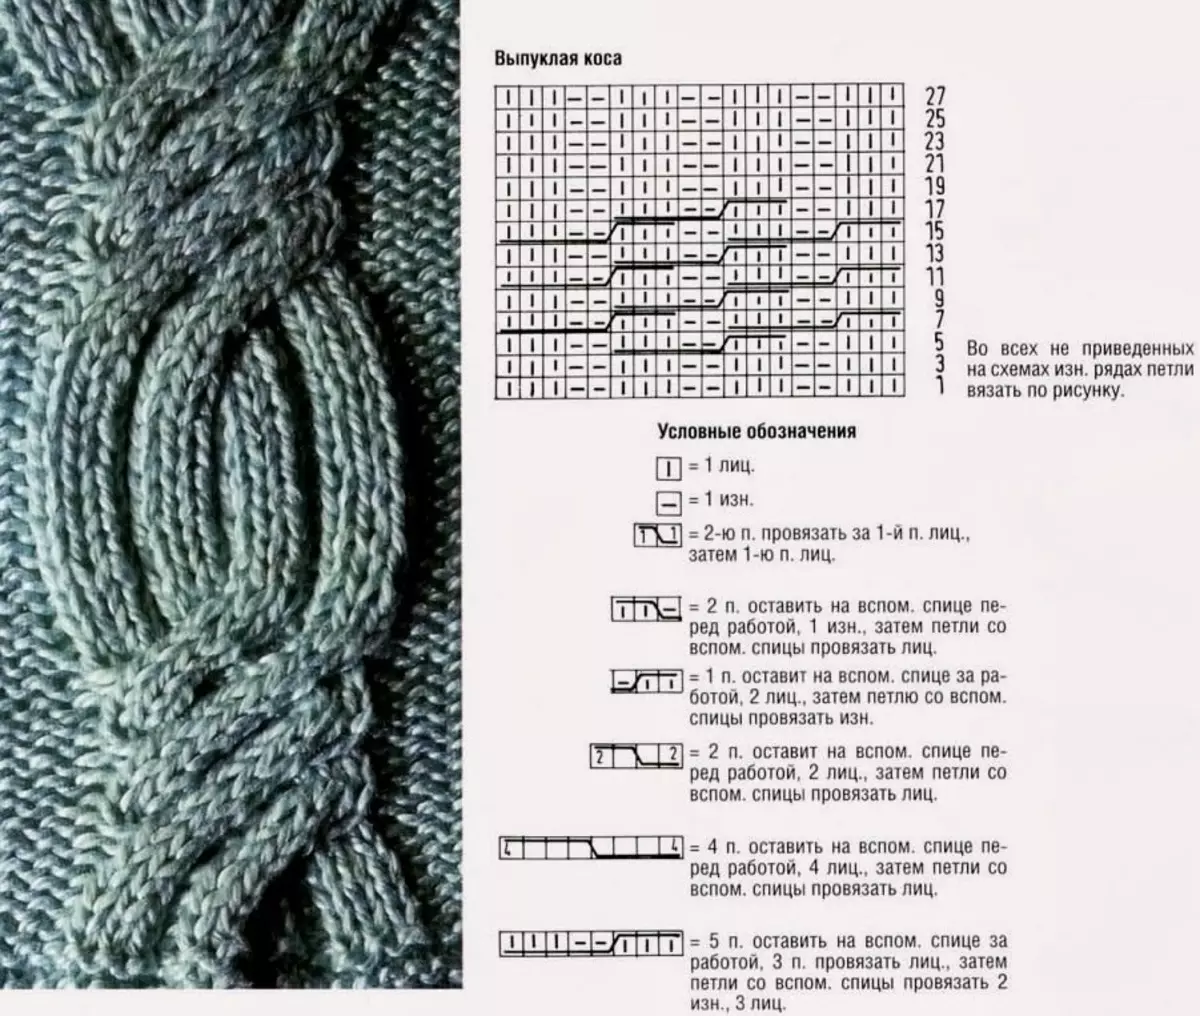 Мужской шарф спицами: схемы с описаниями для начинающих вязальщиц